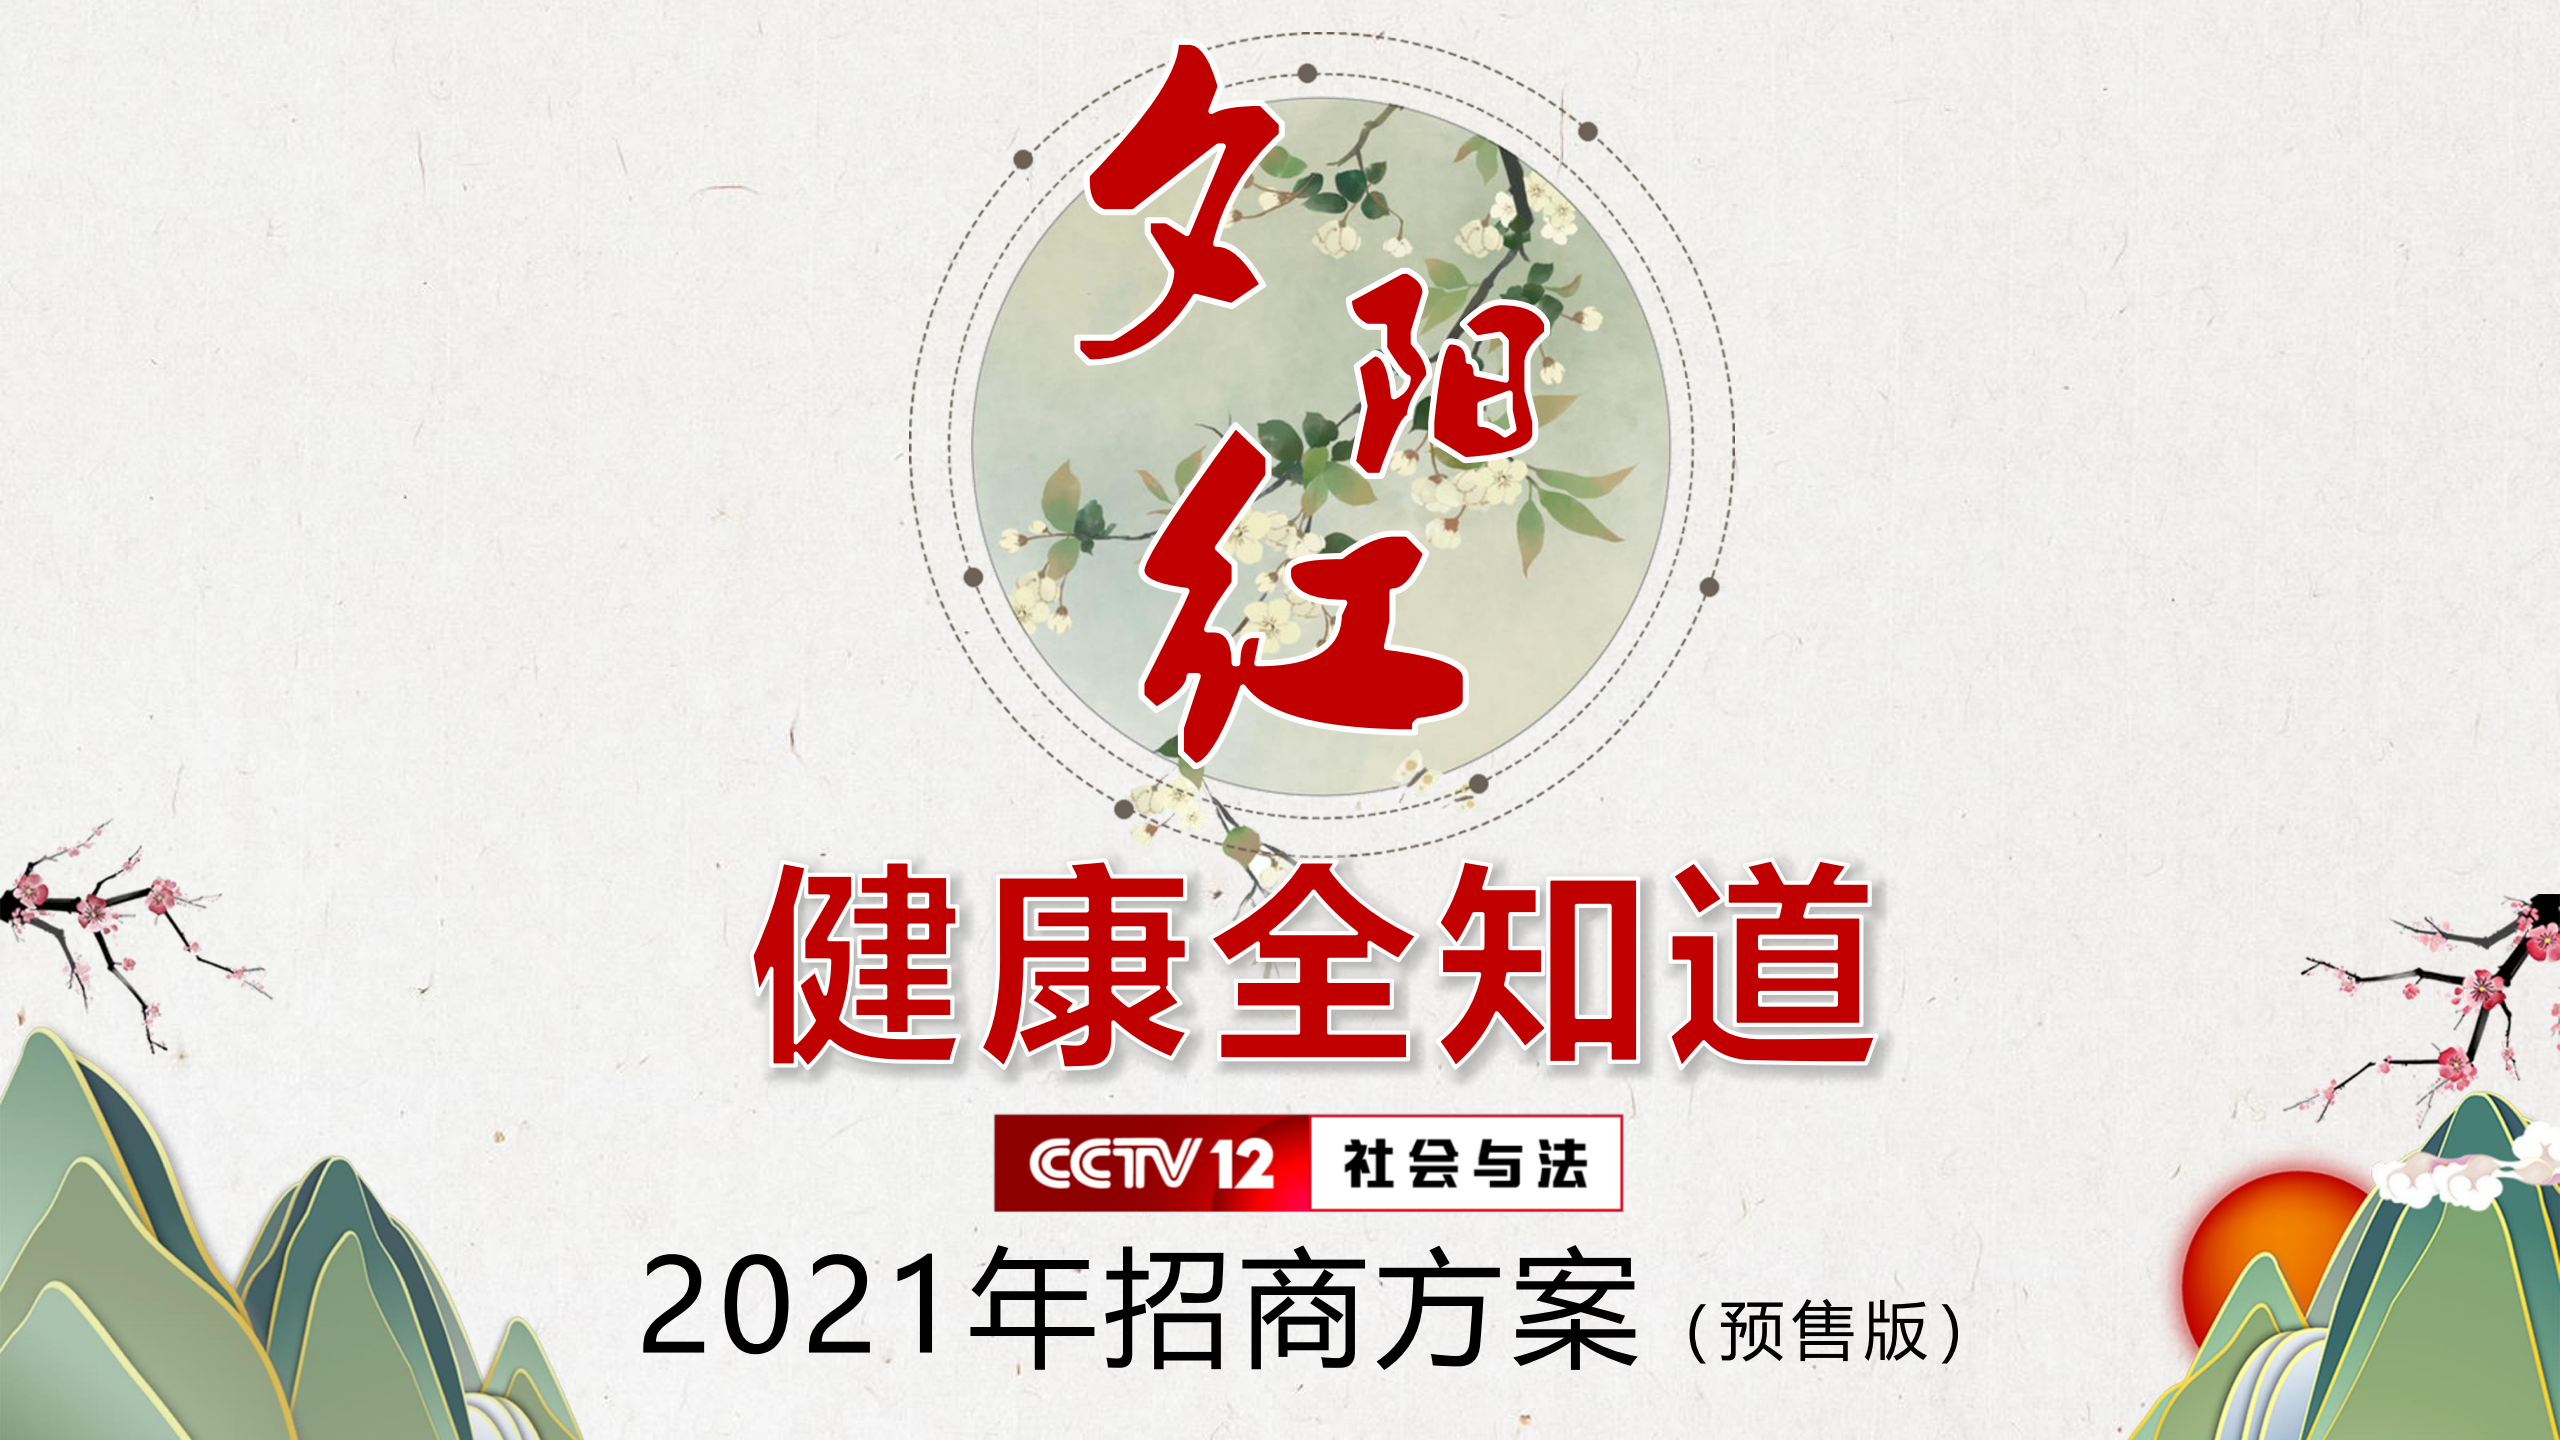 2021年CCTV-12《夕阳红健康全知道》招商方案